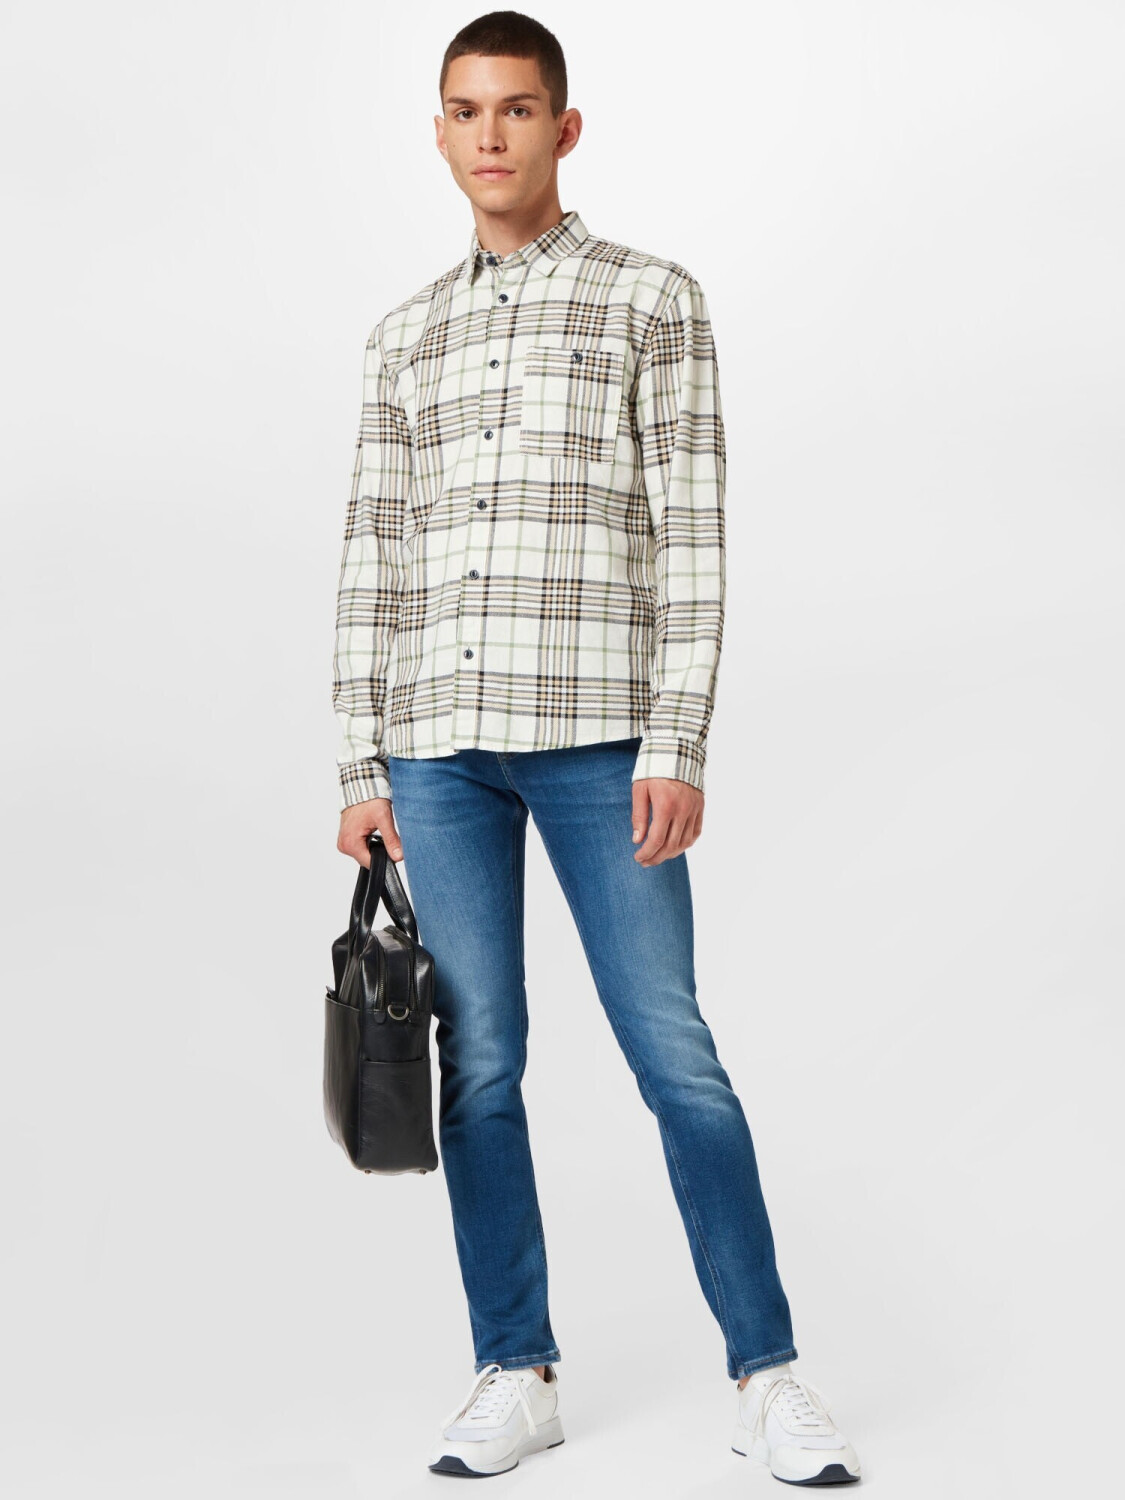 Tom Tailor Denim Hemd mit Karo-Muster (1032385) off white big twill check  ab 19,99 € | Preisvergleich bei